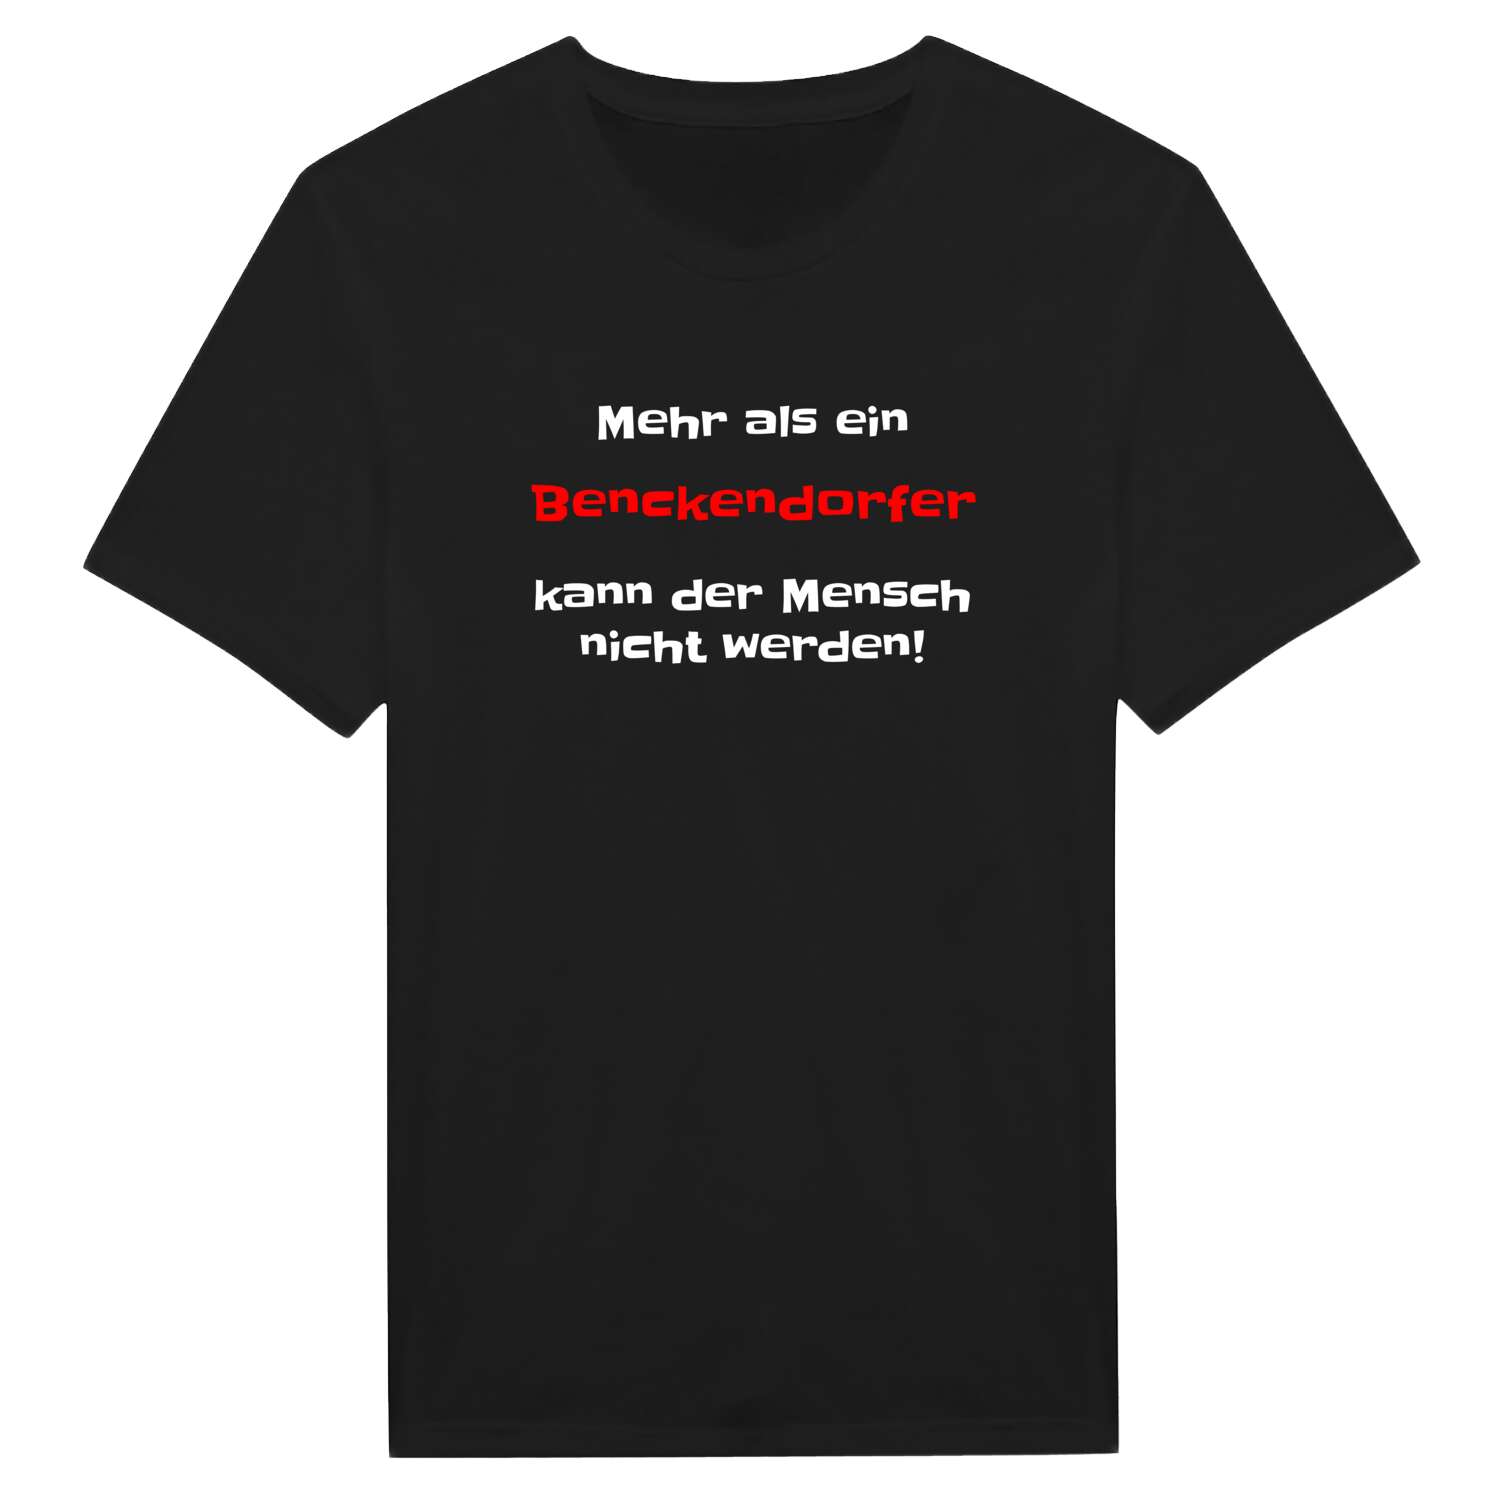 Benckendorf T-Shirt »Mehr als ein«